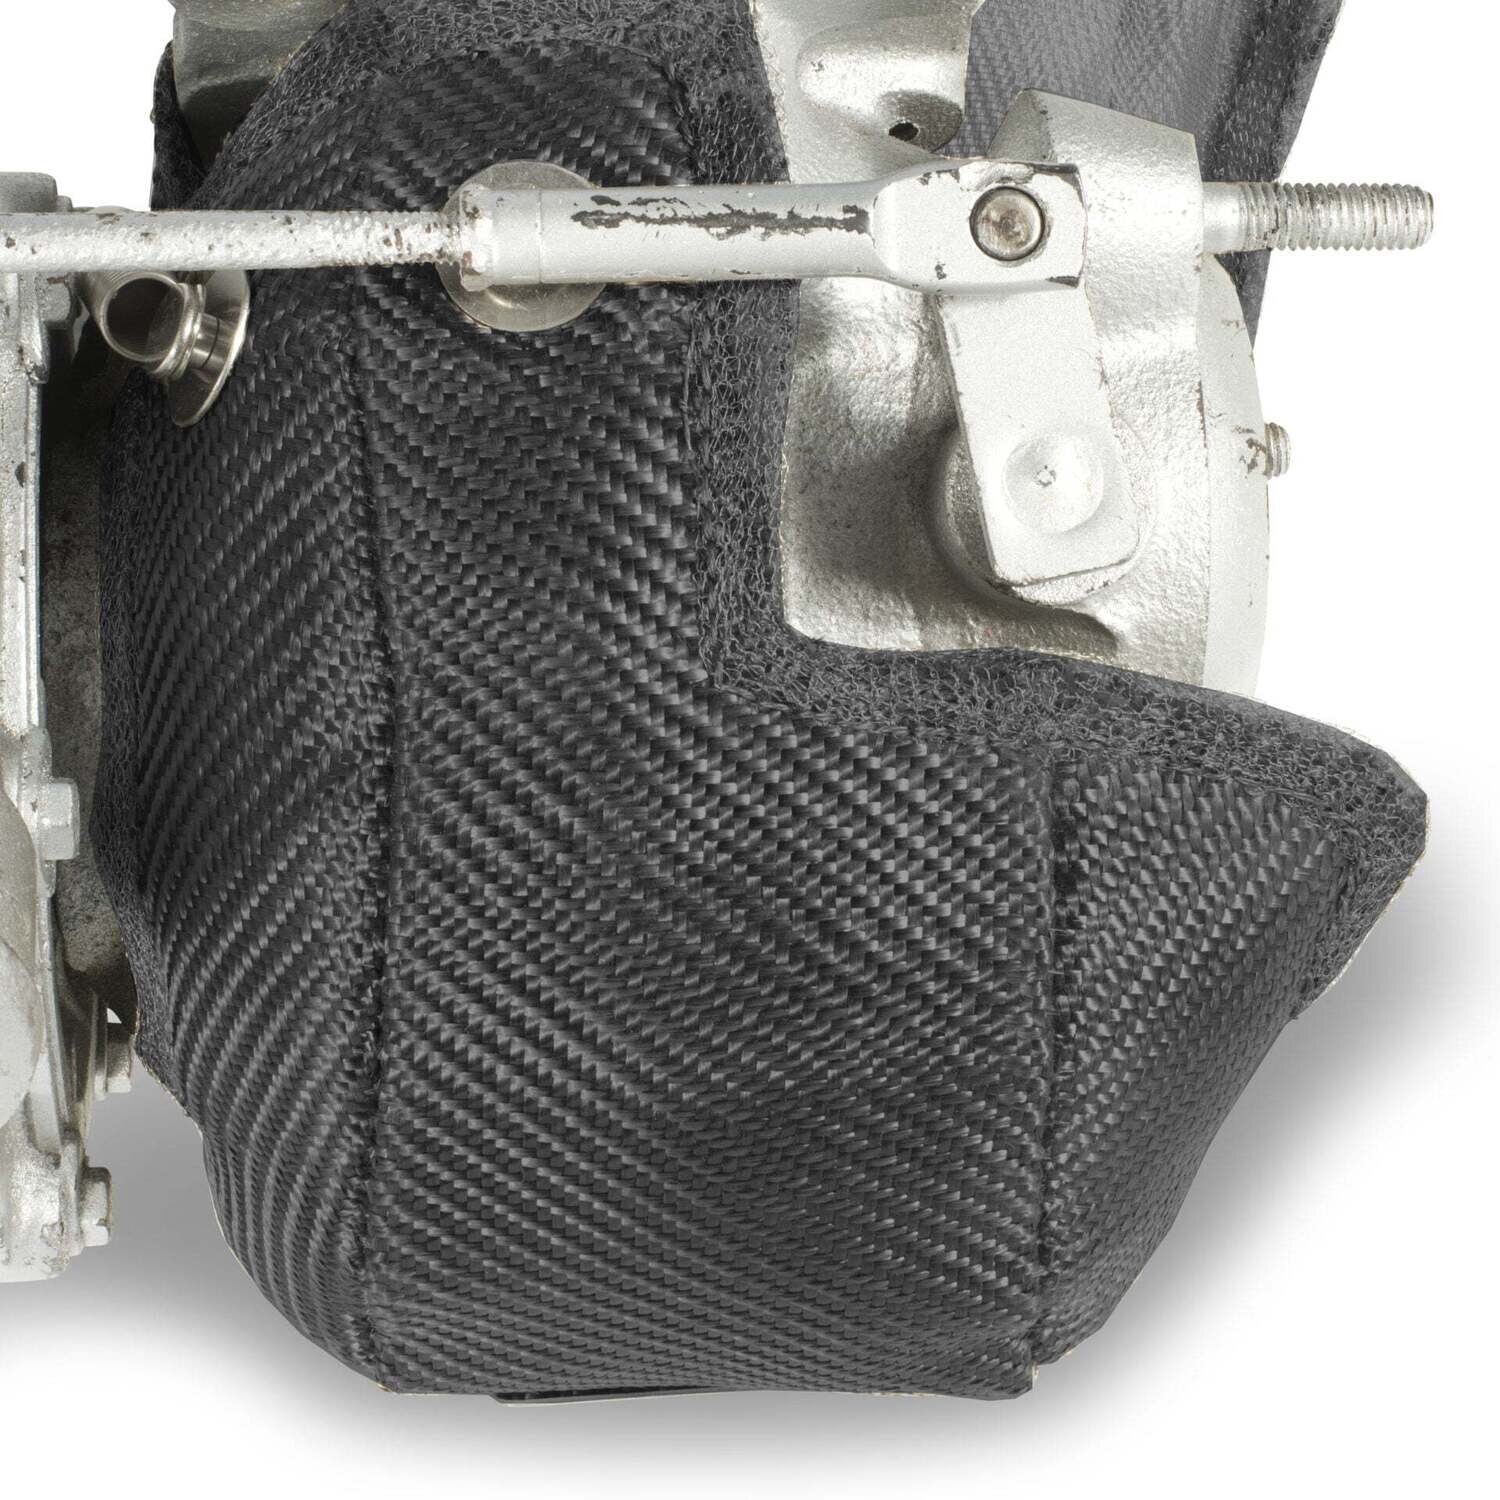 Borg Warner kkk K04-15 Turbo Blanket - Carbon Fibre